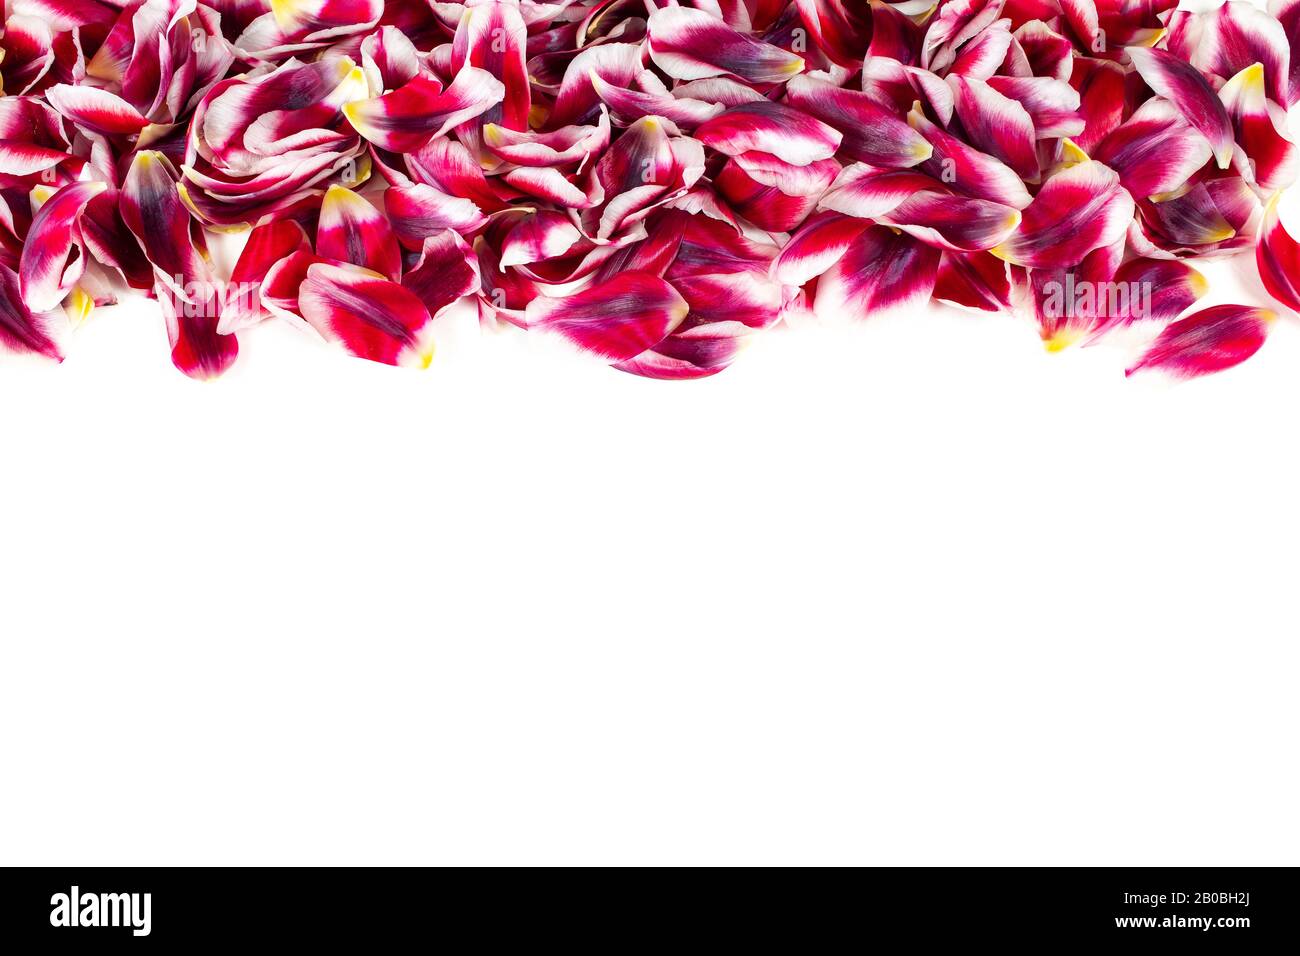 Bordo orizzontale con petali di tulipano rosso fresco isolato su sfondo bianco. Foto Stock